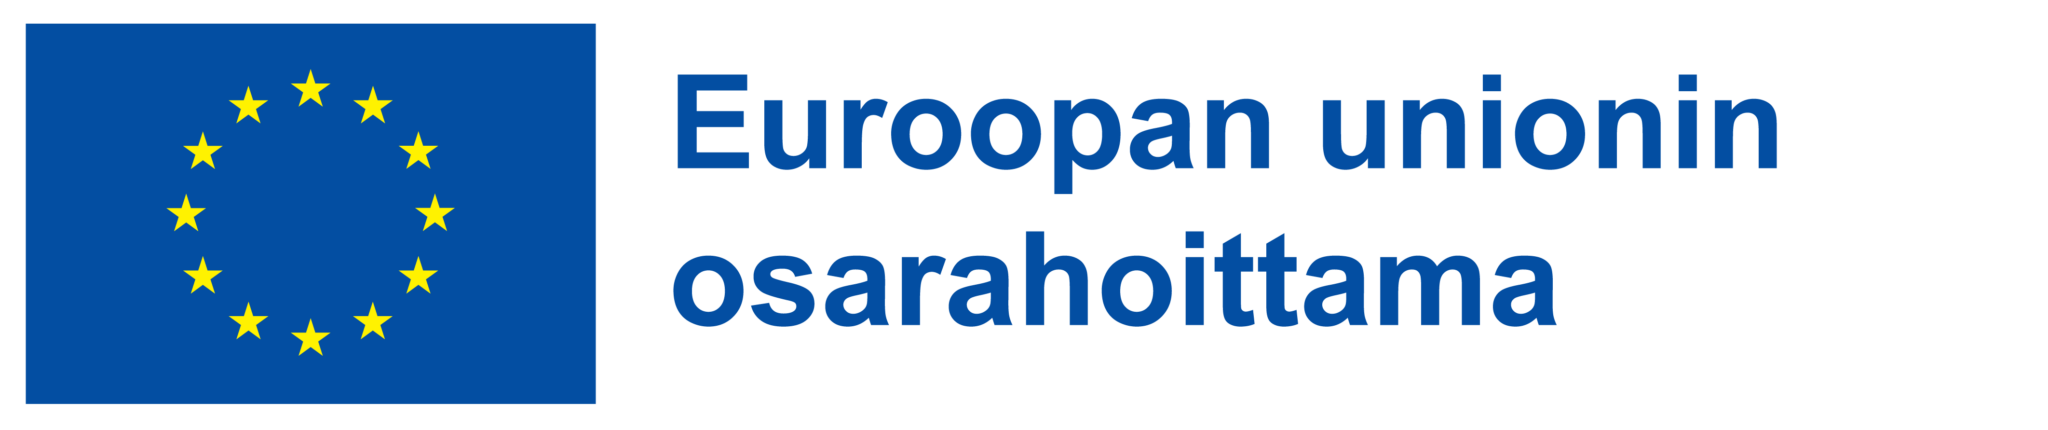 vertaistekno-euroopan-unionin-osarahoittama-logo-2048x430.png